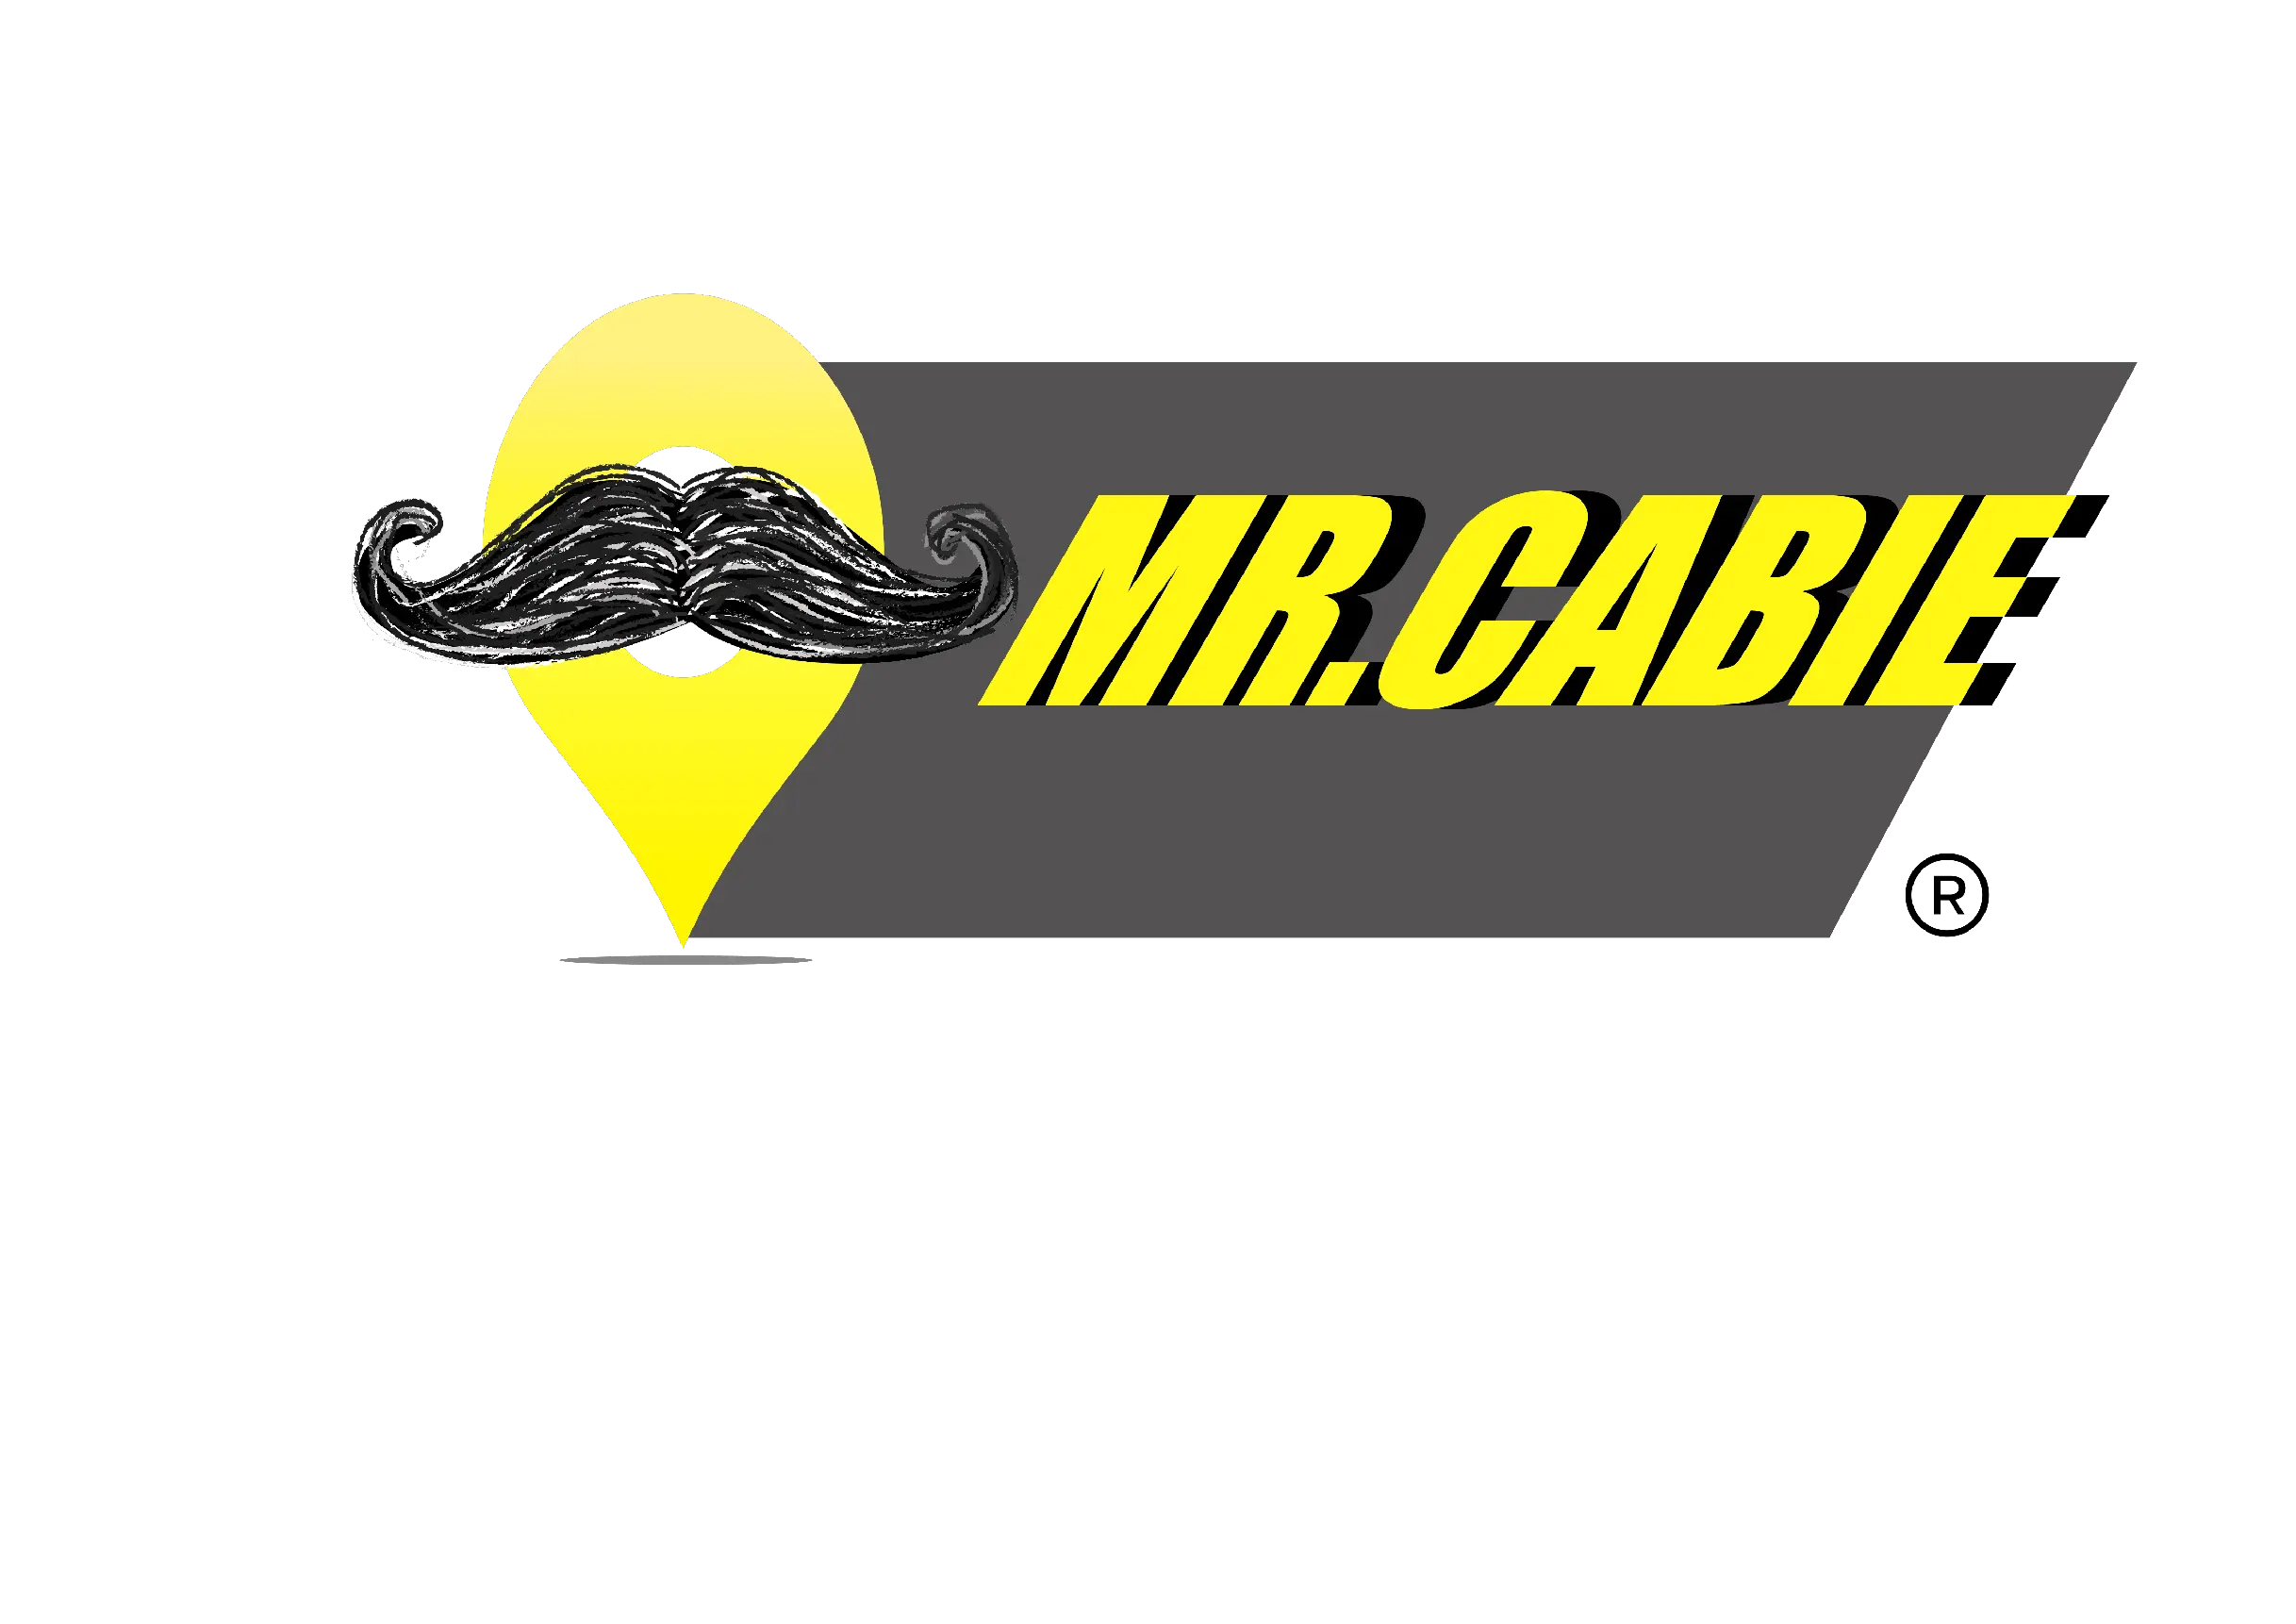 MR CABIE